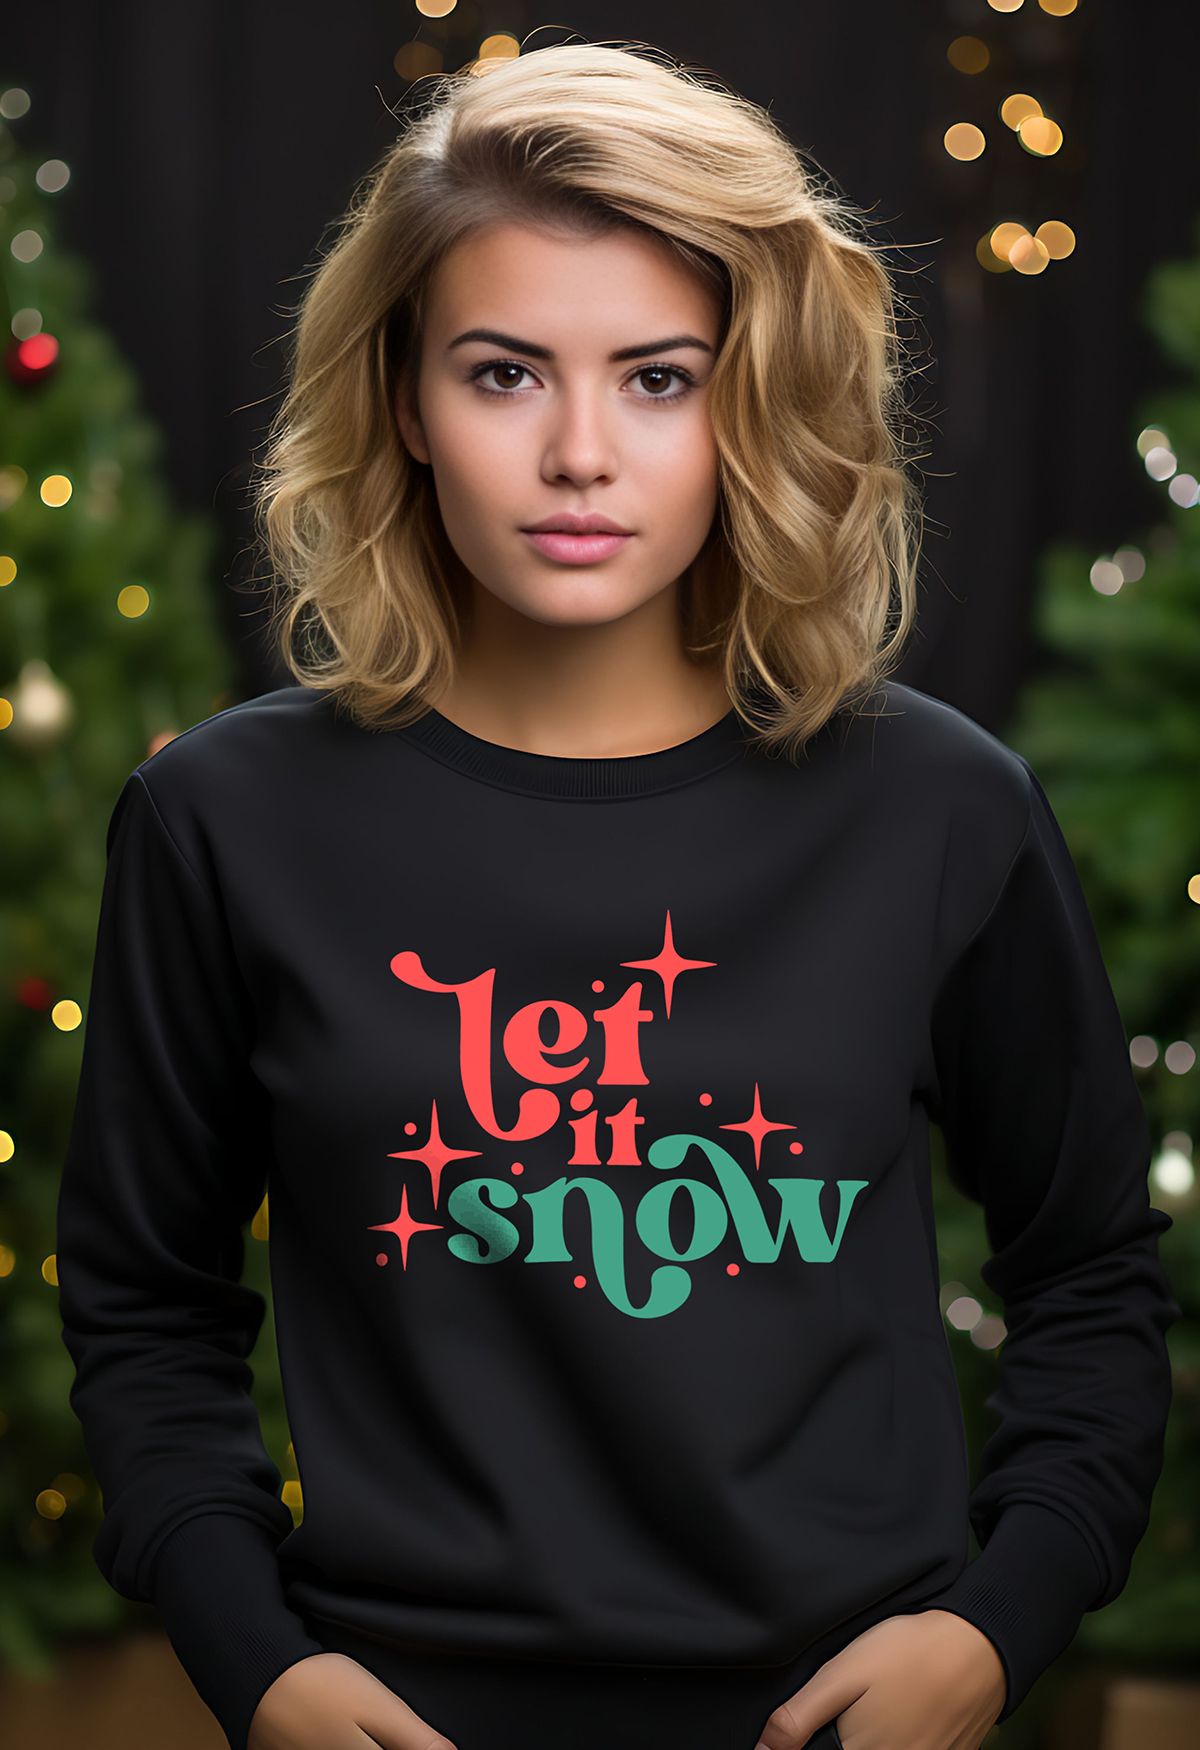 Let It Snow Printed Sweatshirt in Black